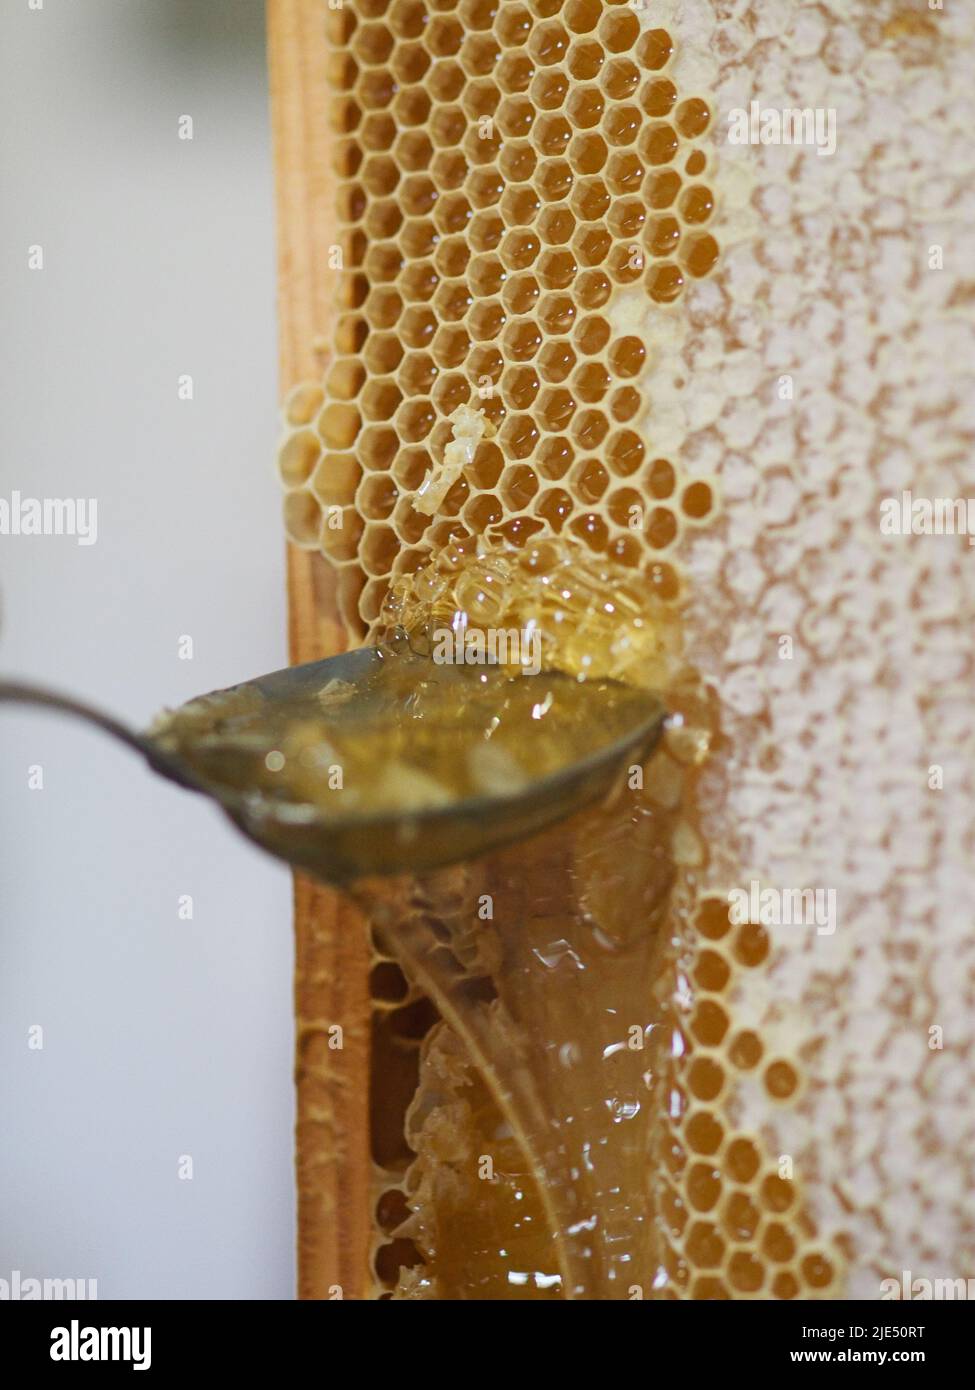 Le miel brut naturel étant filtré ad dripped à travers un tamis pour filtrer  la cire de nos abeilles Photo Stock - Alamy